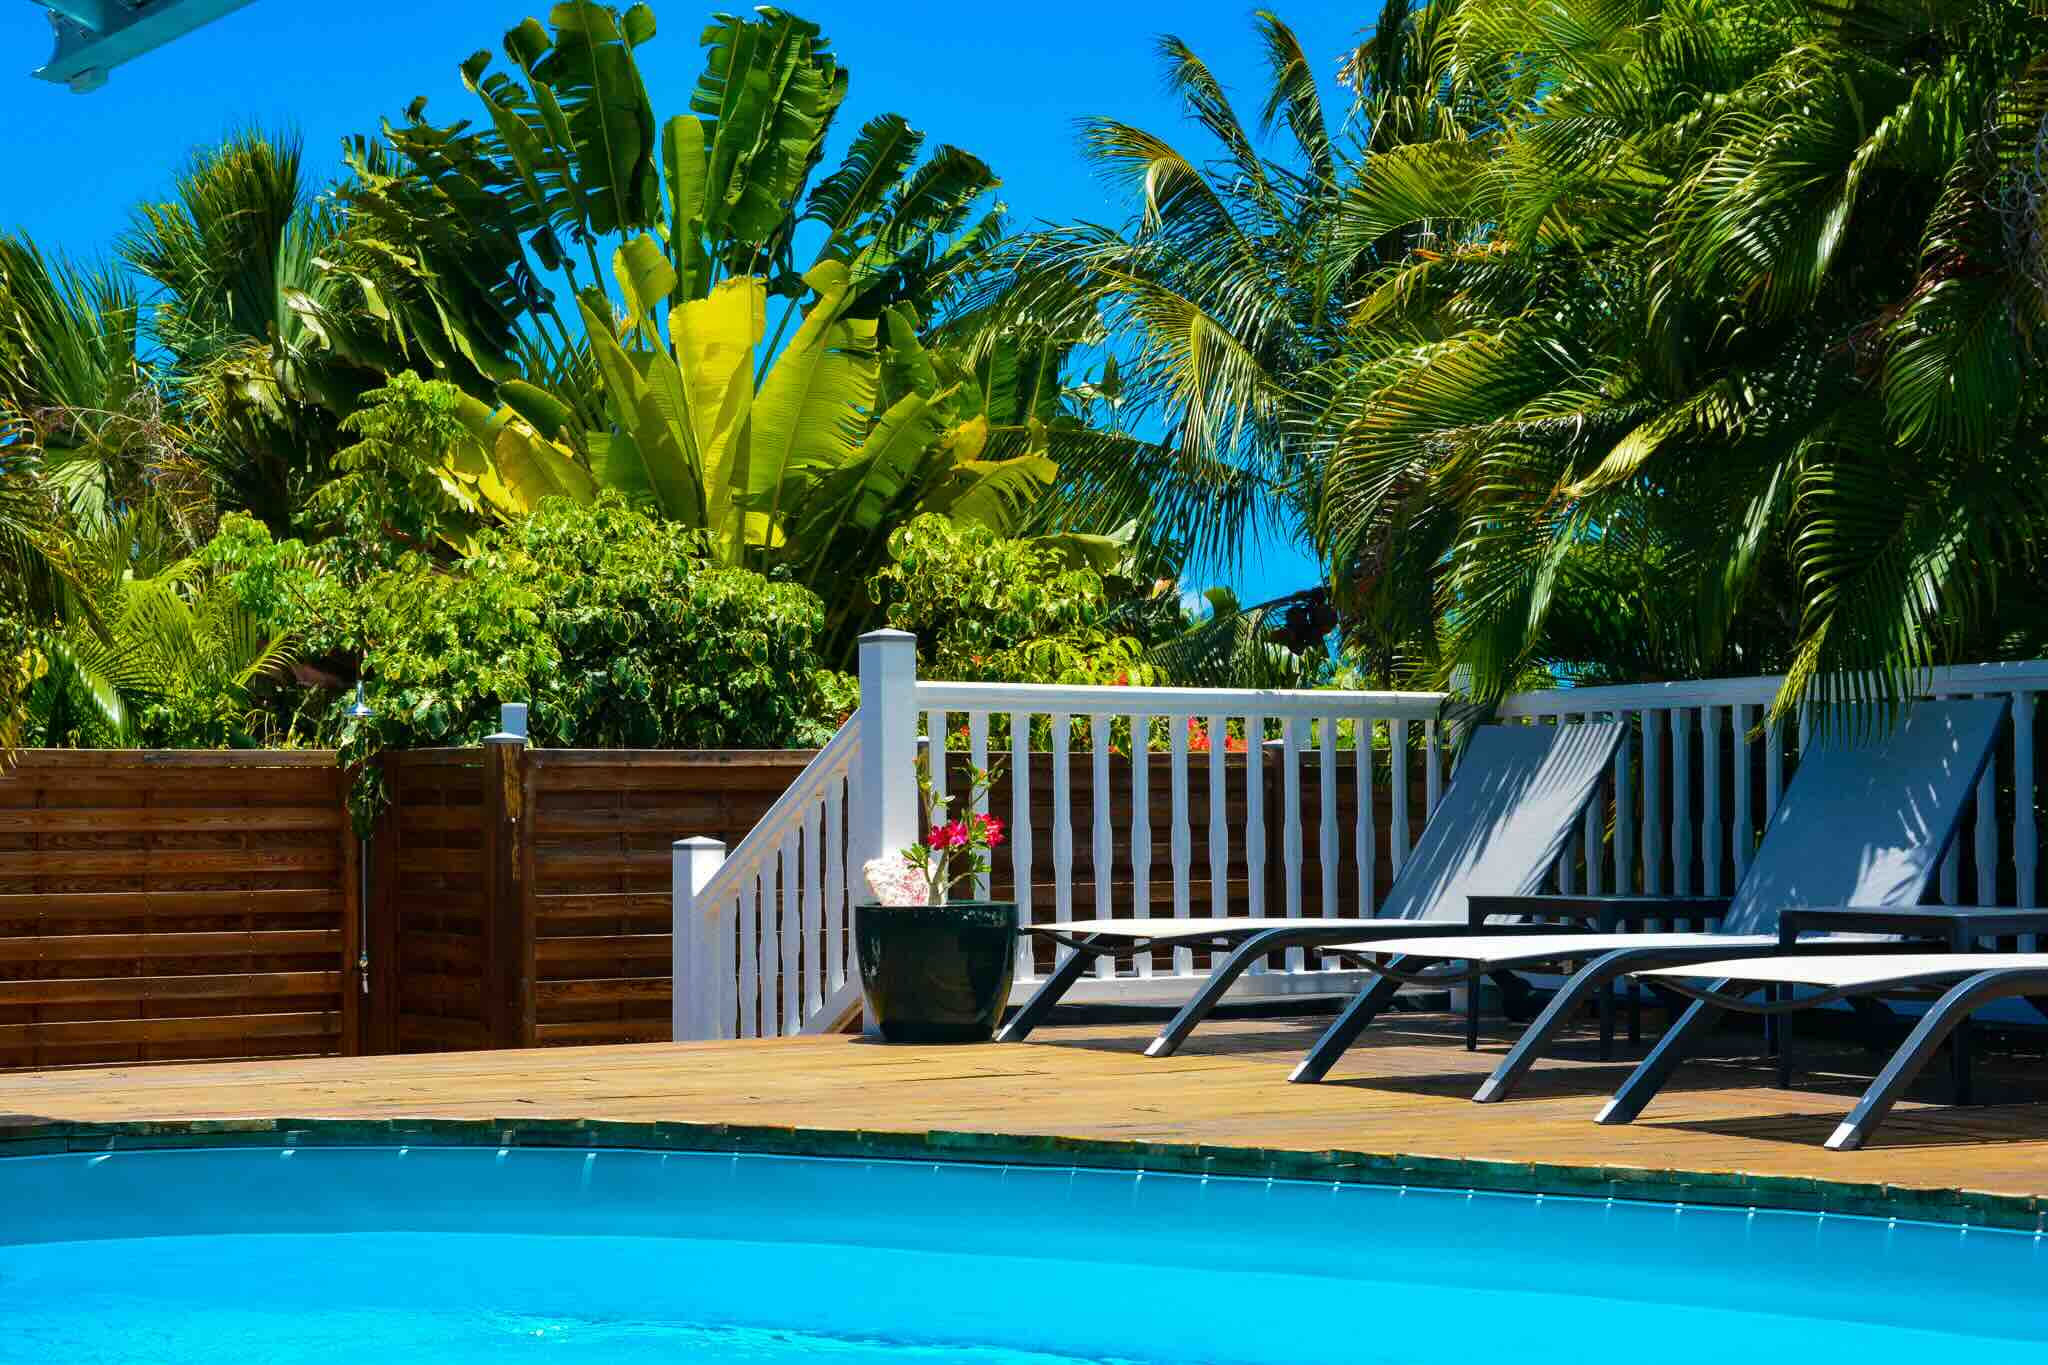 Très belle villa familiale disponible à la location pour vos vacances en Guadeloupe, totalement rénovée avec piscine privée et jacuzzi pour 8 personnes dans un jardin tropical située dans une résidence privée